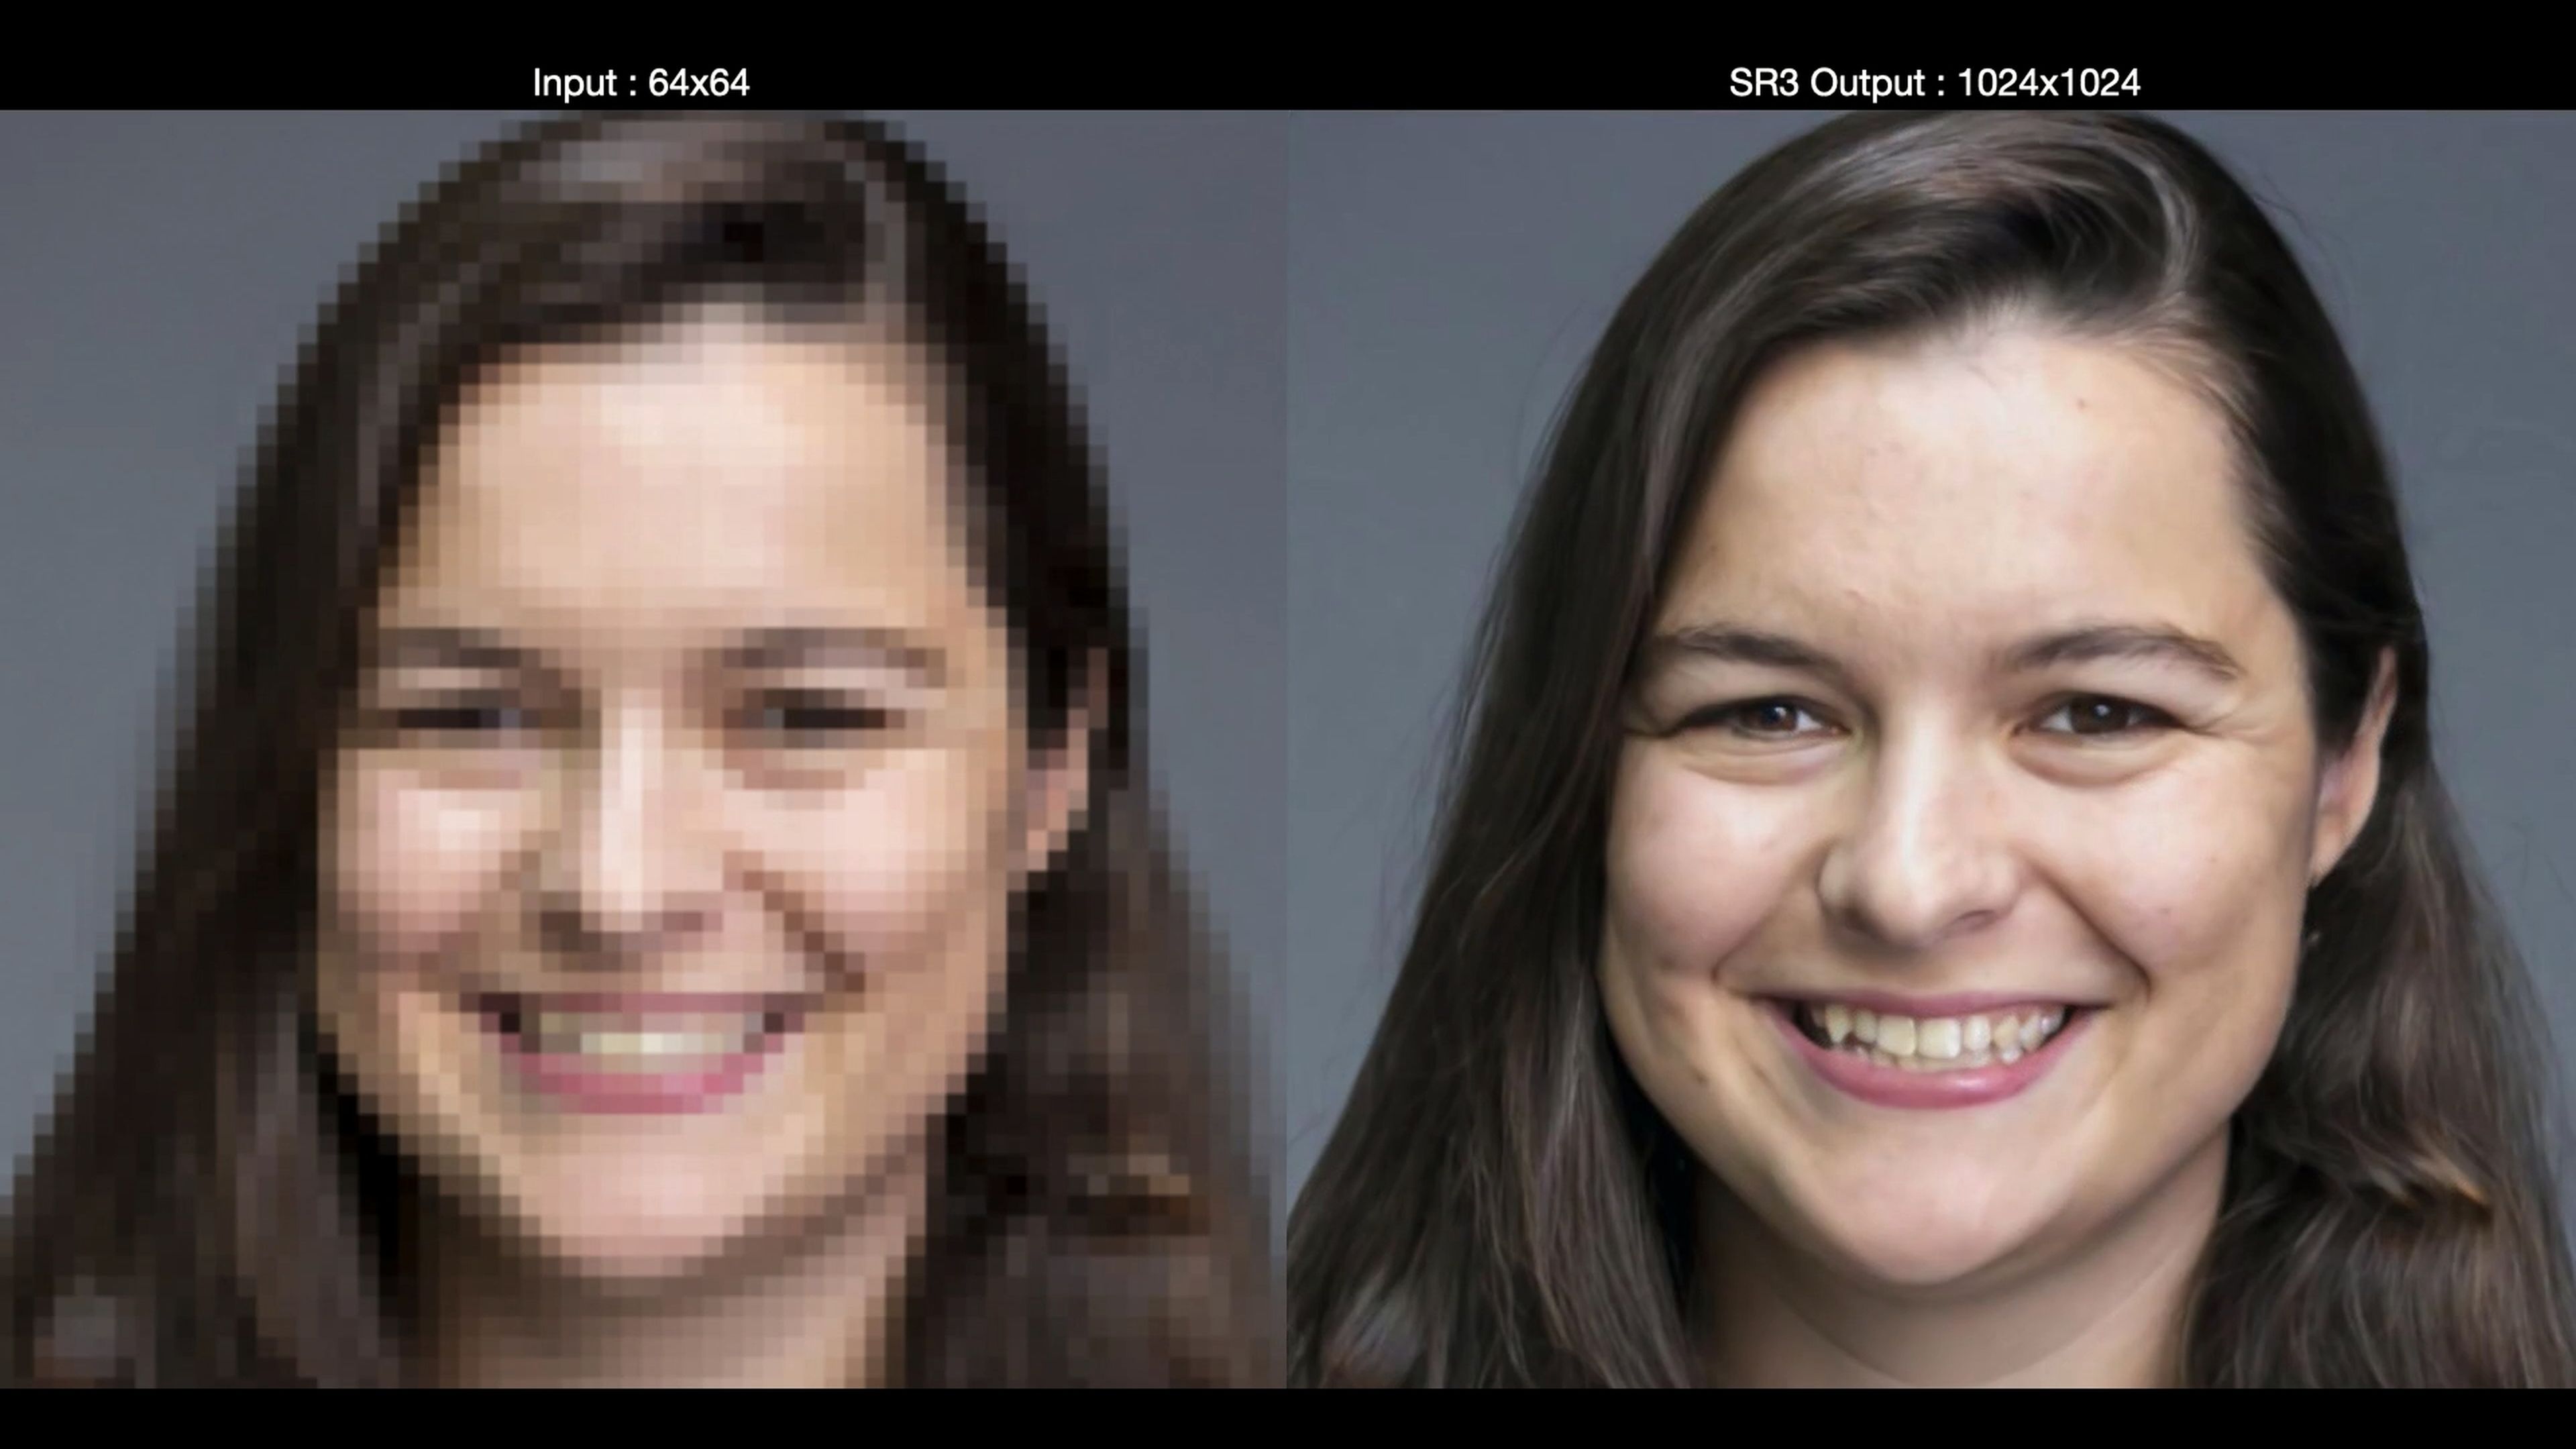 Esta IA de Google convierte fotos borrosas a alta resolución, y el resultado es espectacular